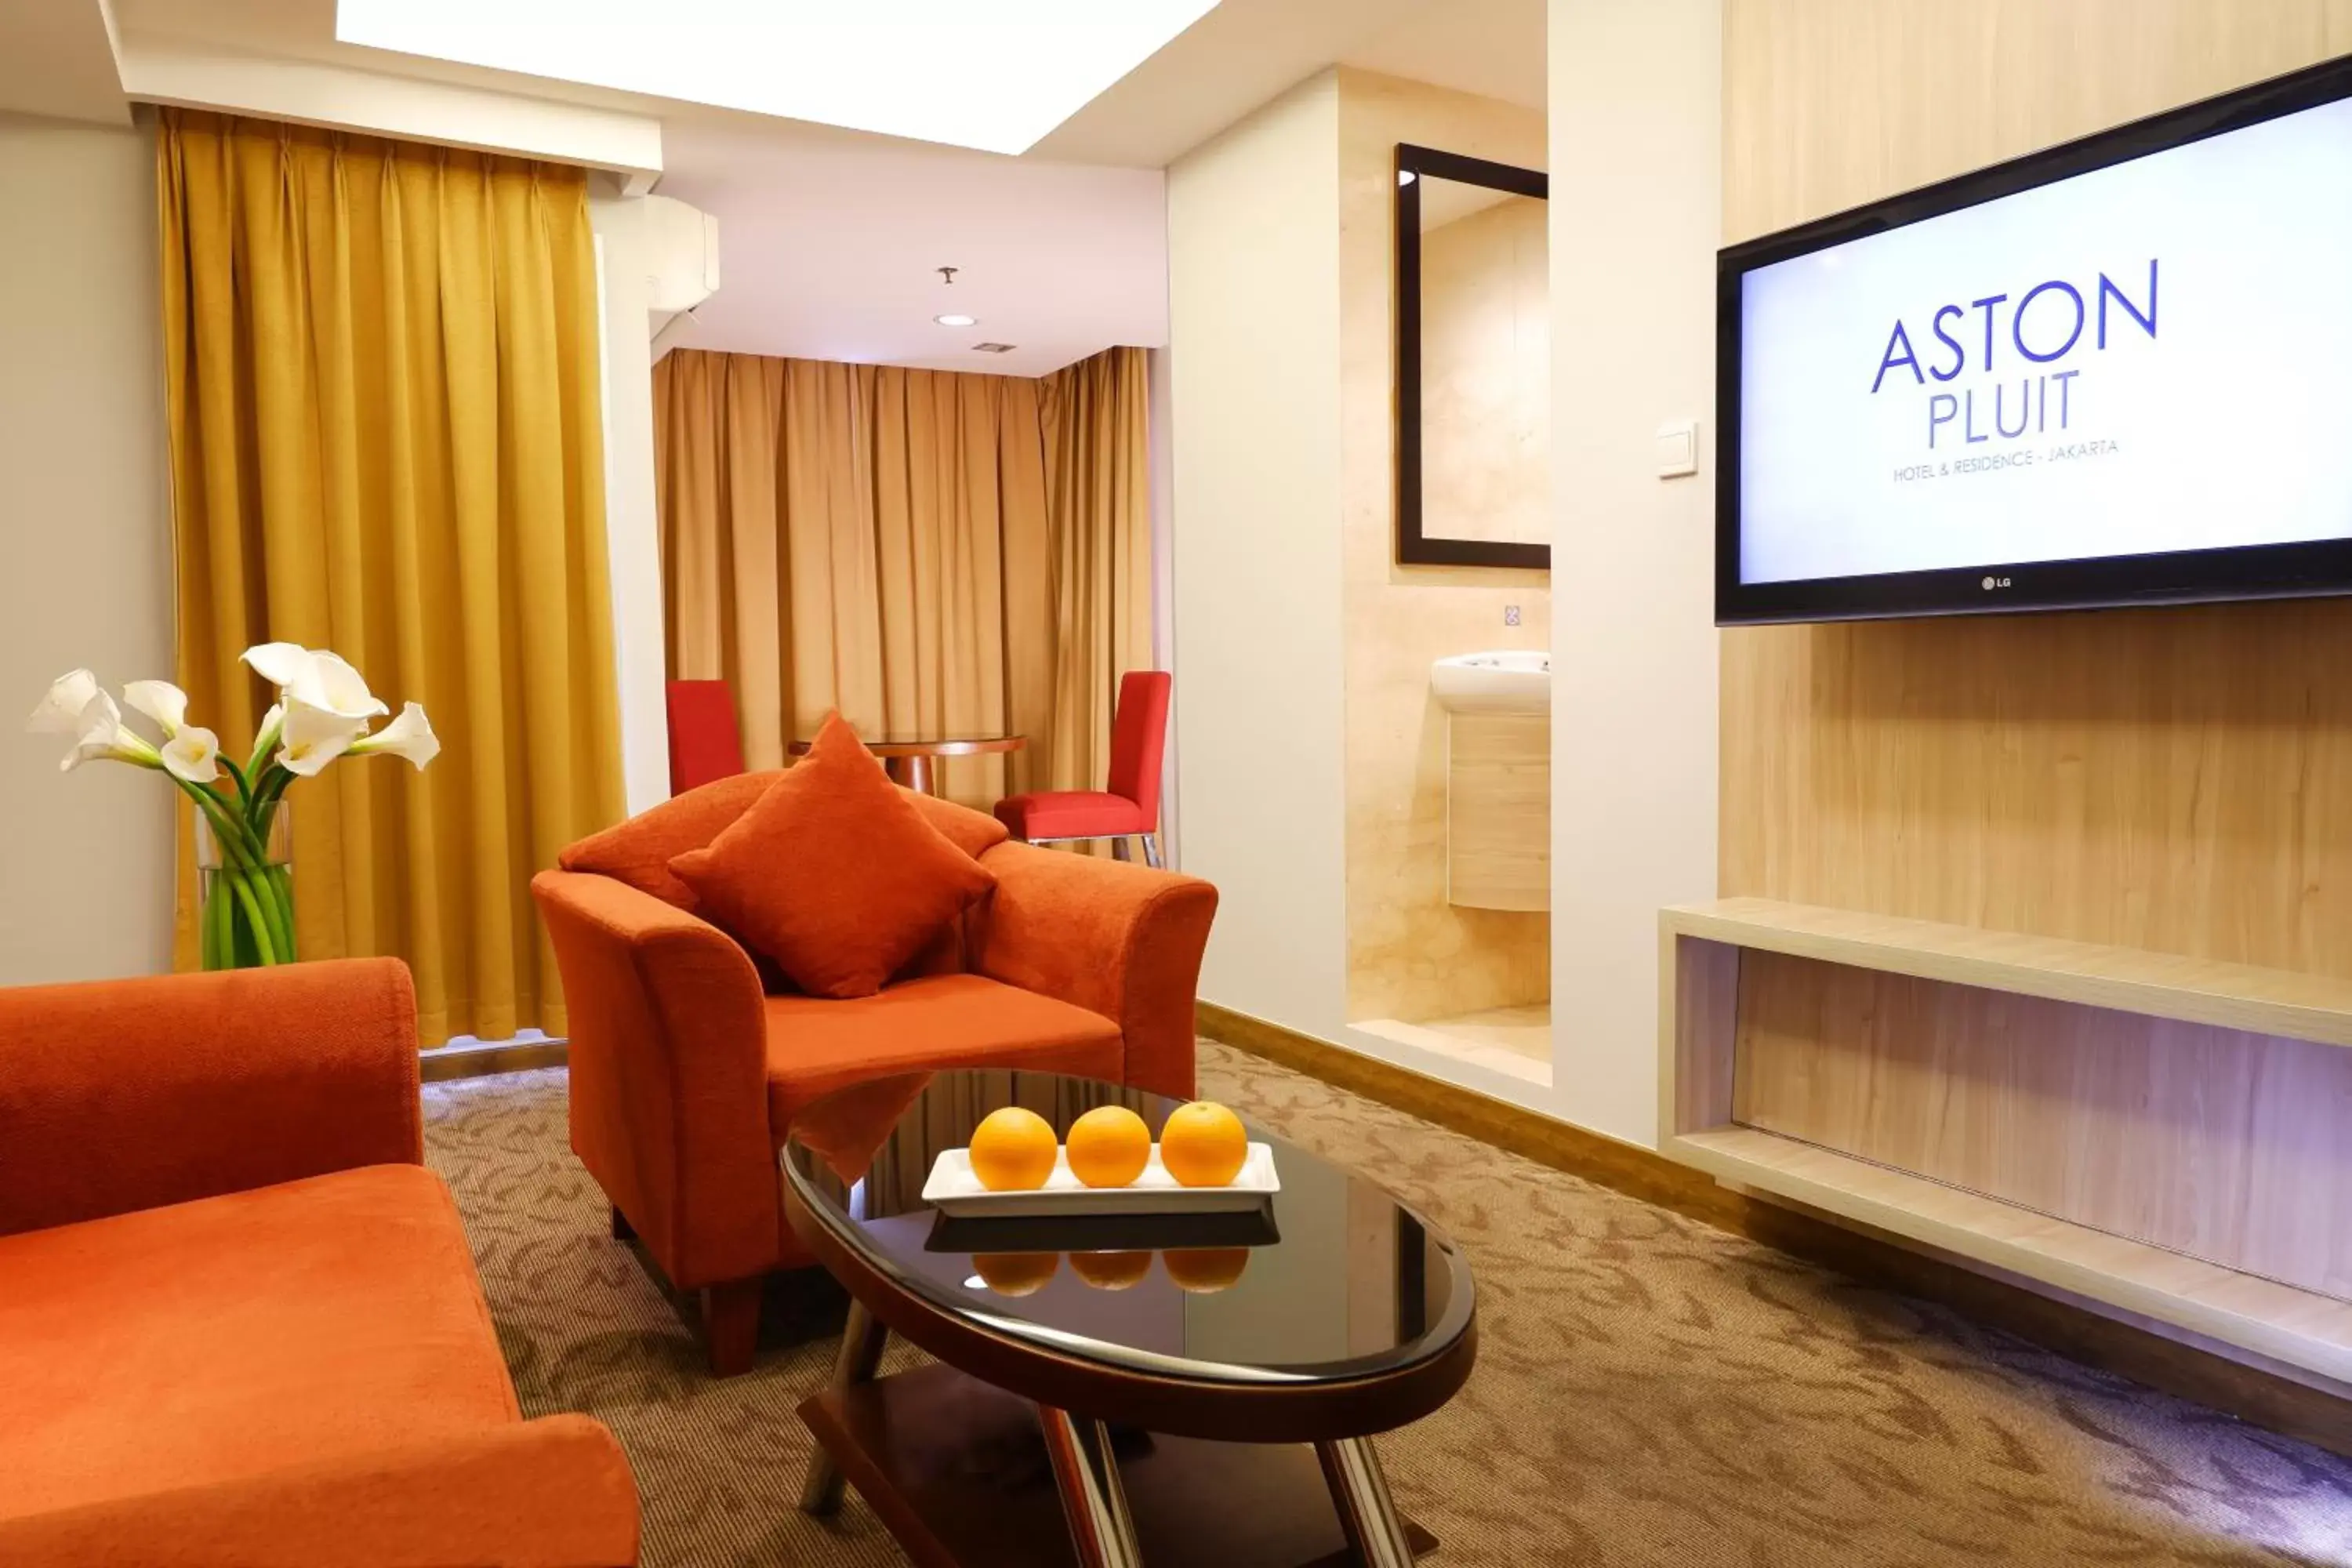 Living room in ASTON Pluit Hotel & Residence